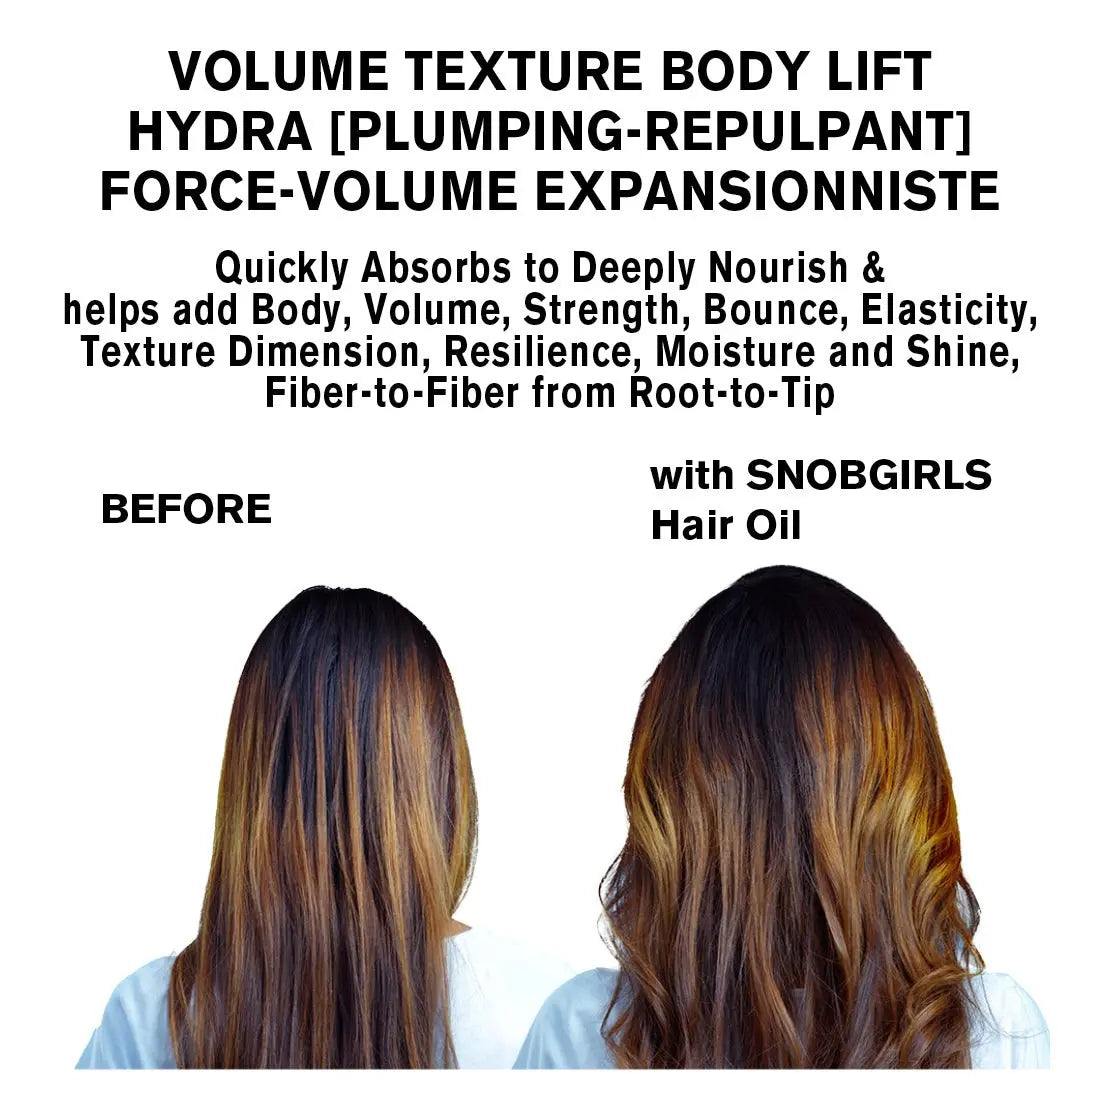 Trio BODYDENSE Vegan Shampoo, Conditioner, Hair Oil for Volume TextureVegan Shampoo ConditionerSNOBGIRLS.com